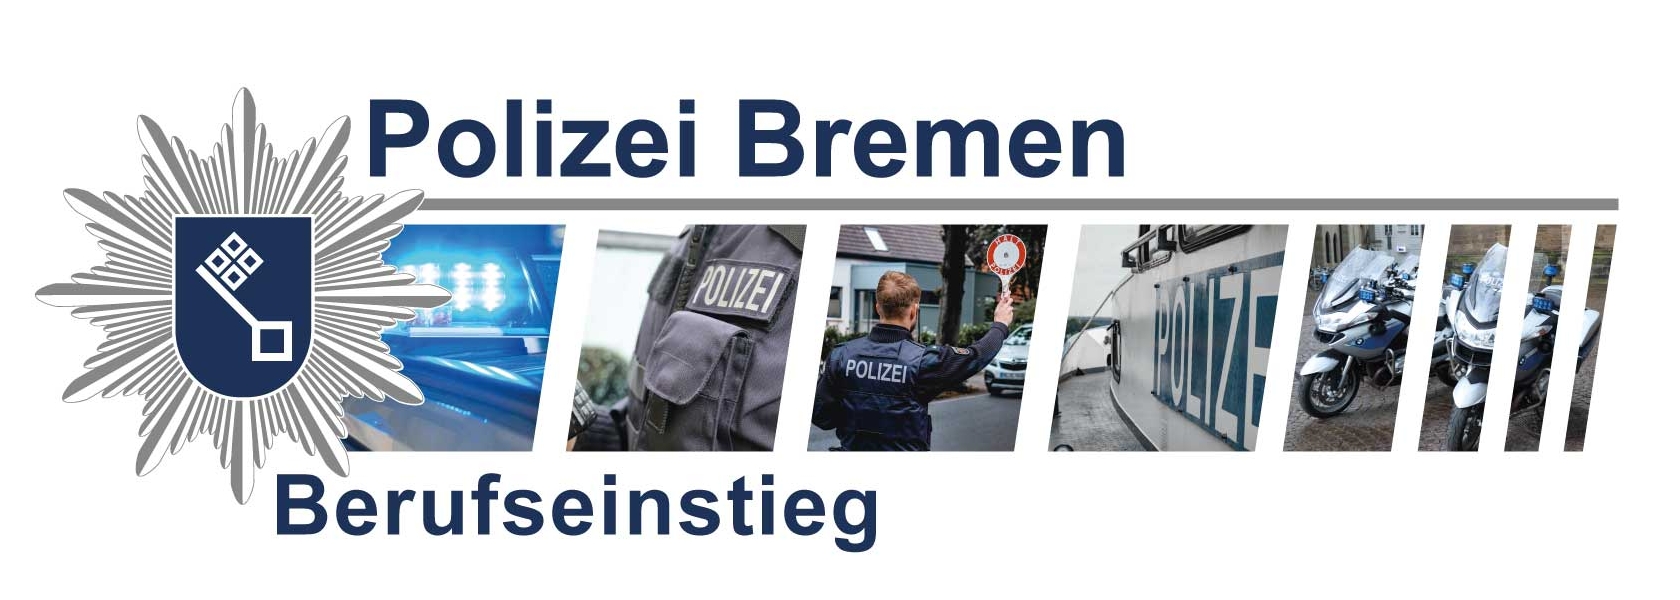 Grafik zeigt eine Werbefoto der Polizei Bremen zum Berufseinstieg